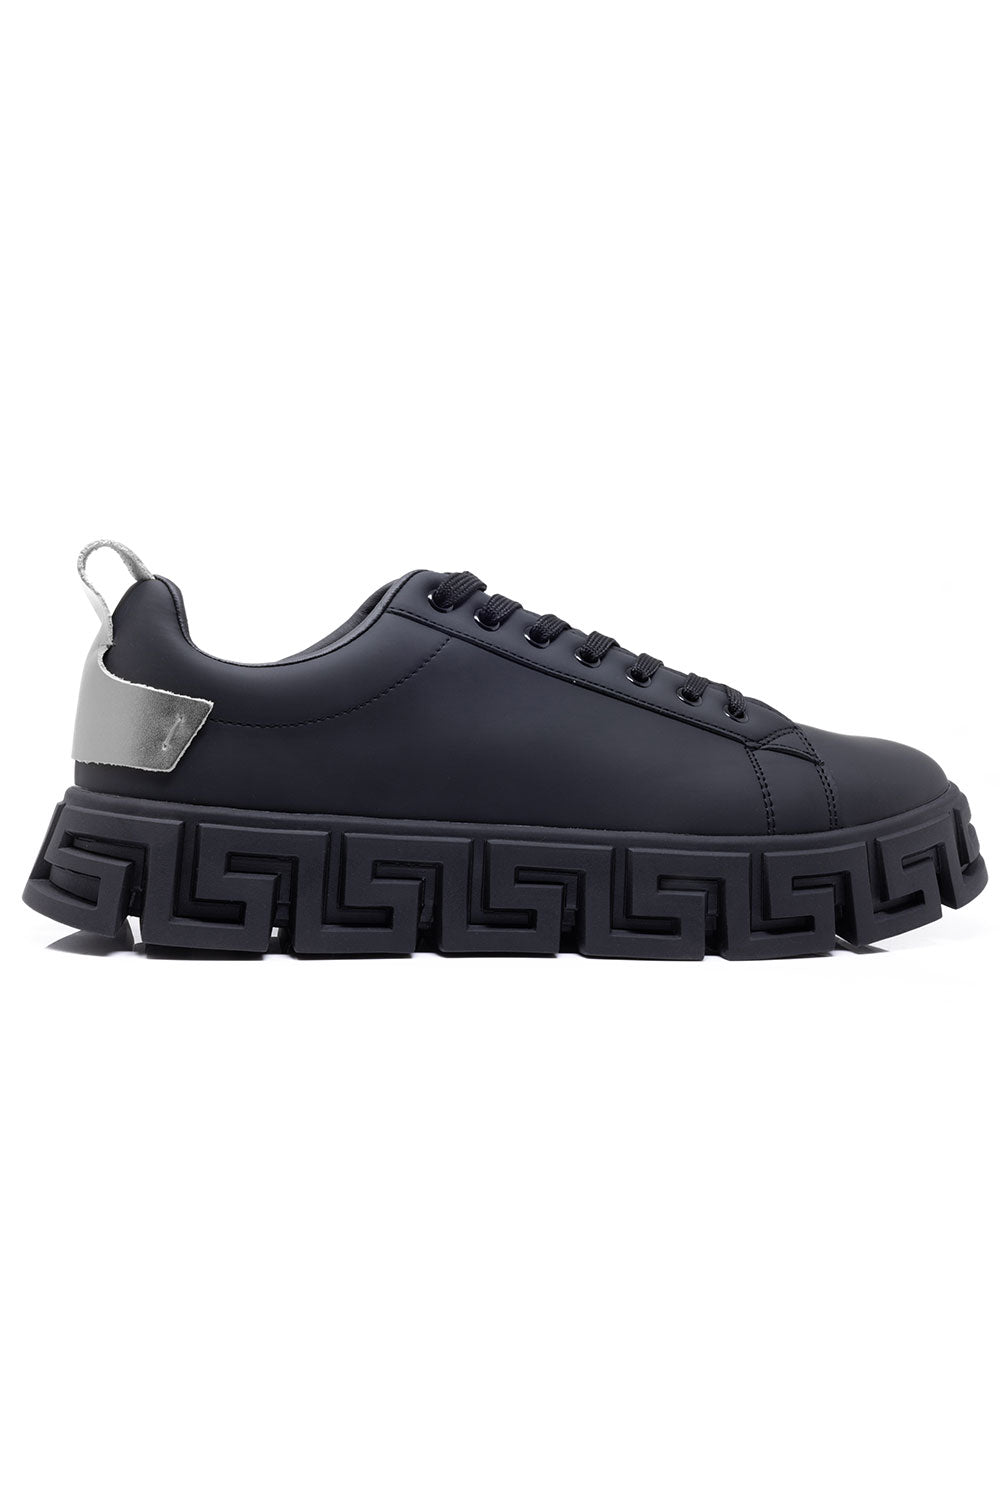 Barabas Men's Premium Greek Key Pattern Sole Sneakers 4SK06 Black Silver